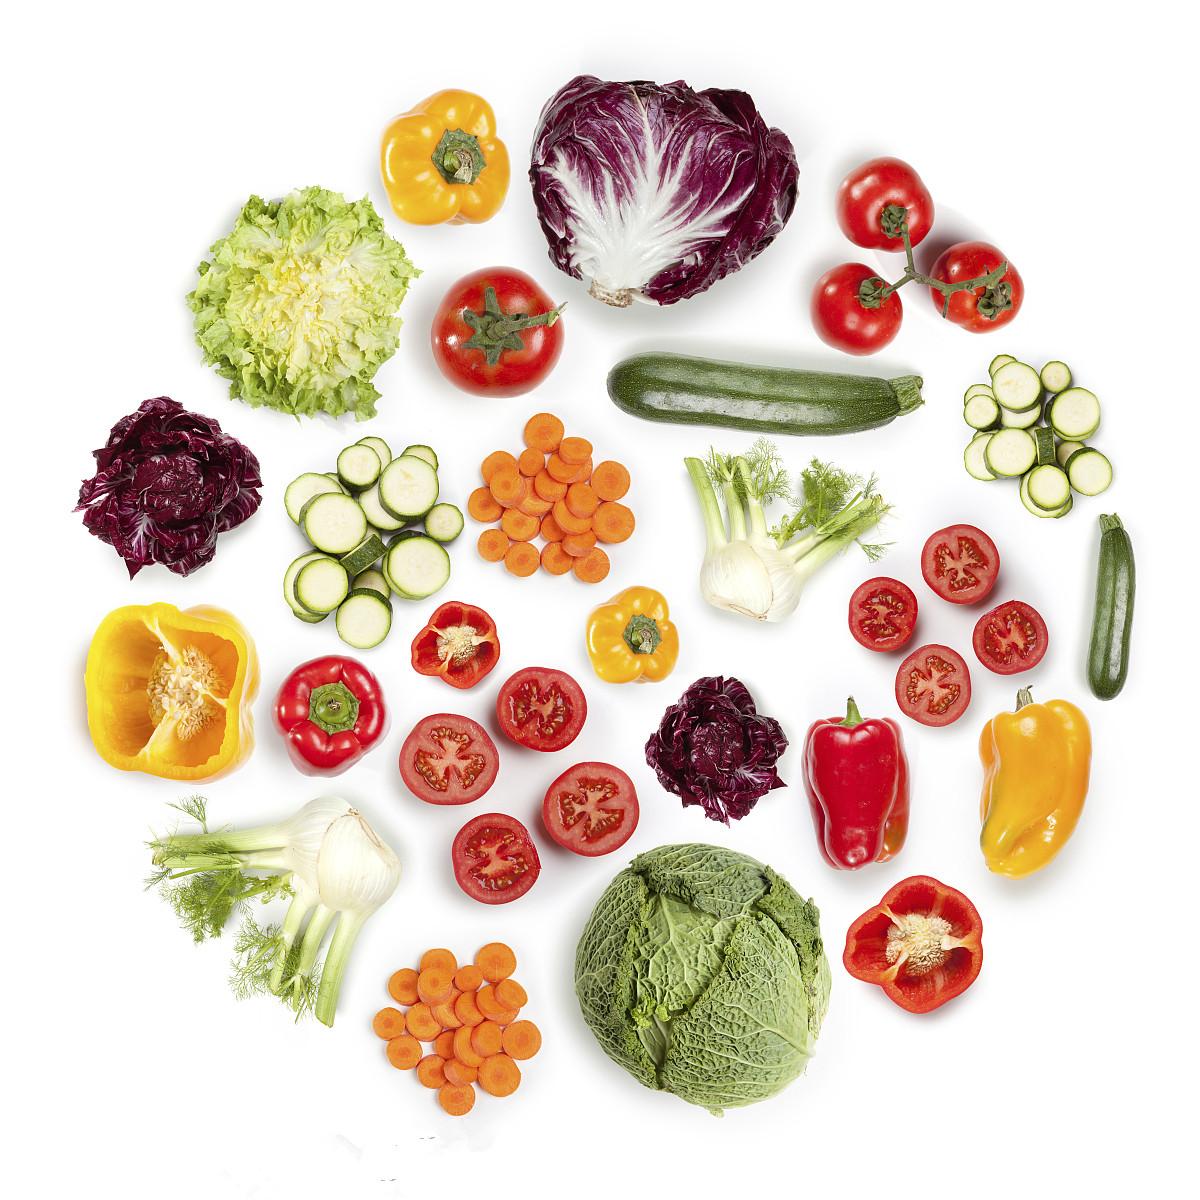 糖尿病人吃哪些蔬菜更好?